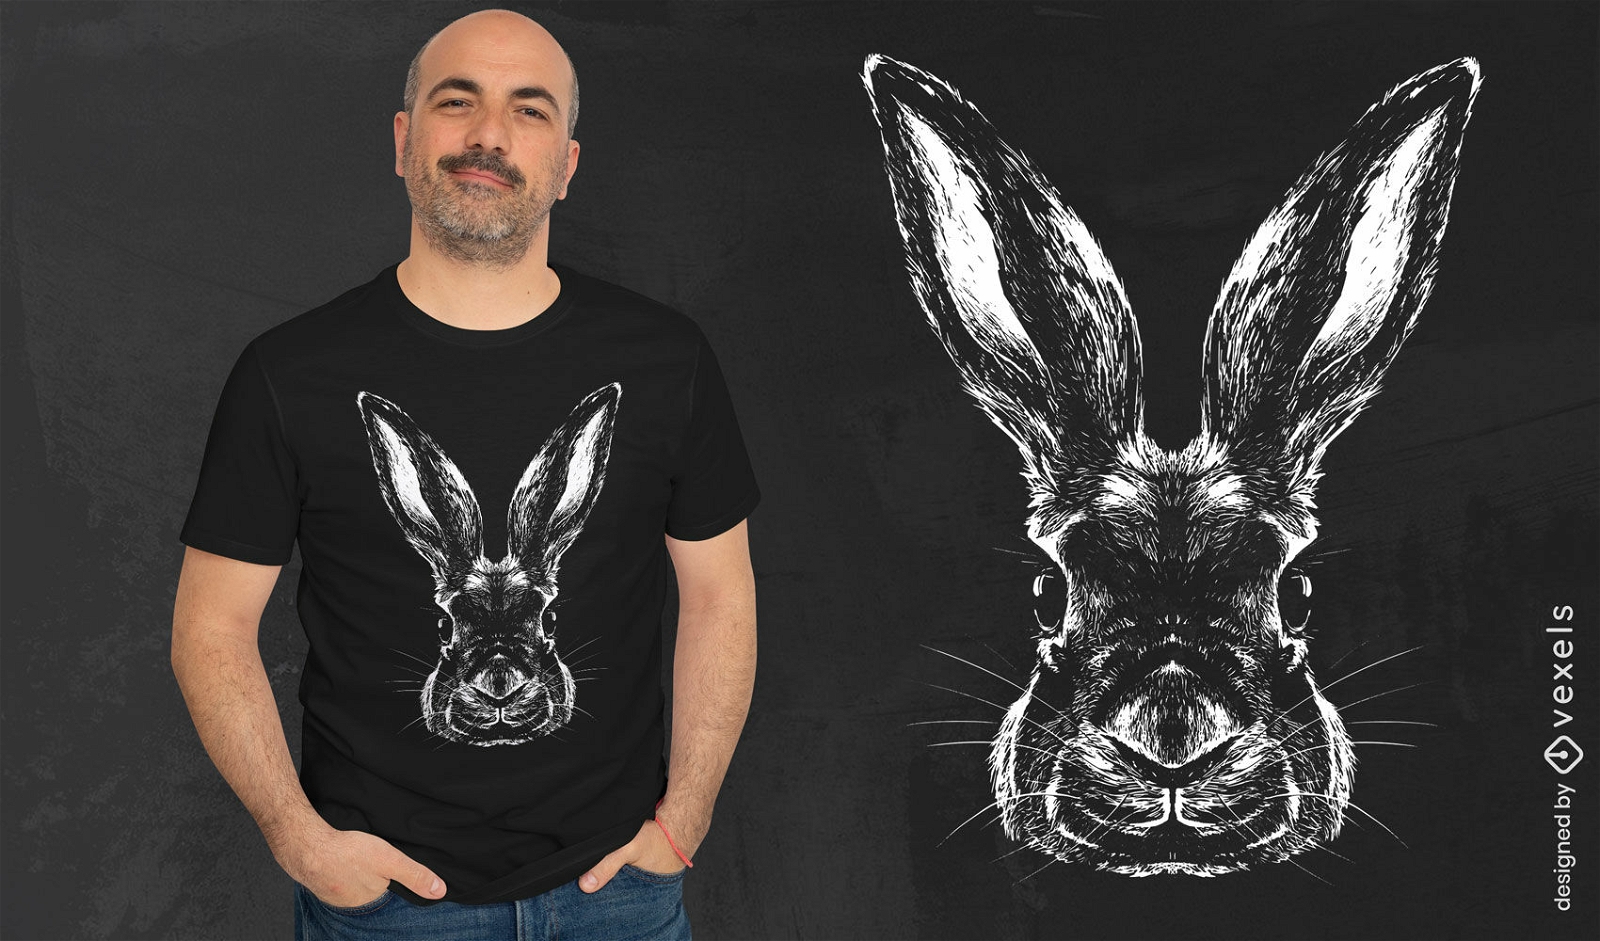 Dise?o de camiseta realista de cabeza de animal de conejo.